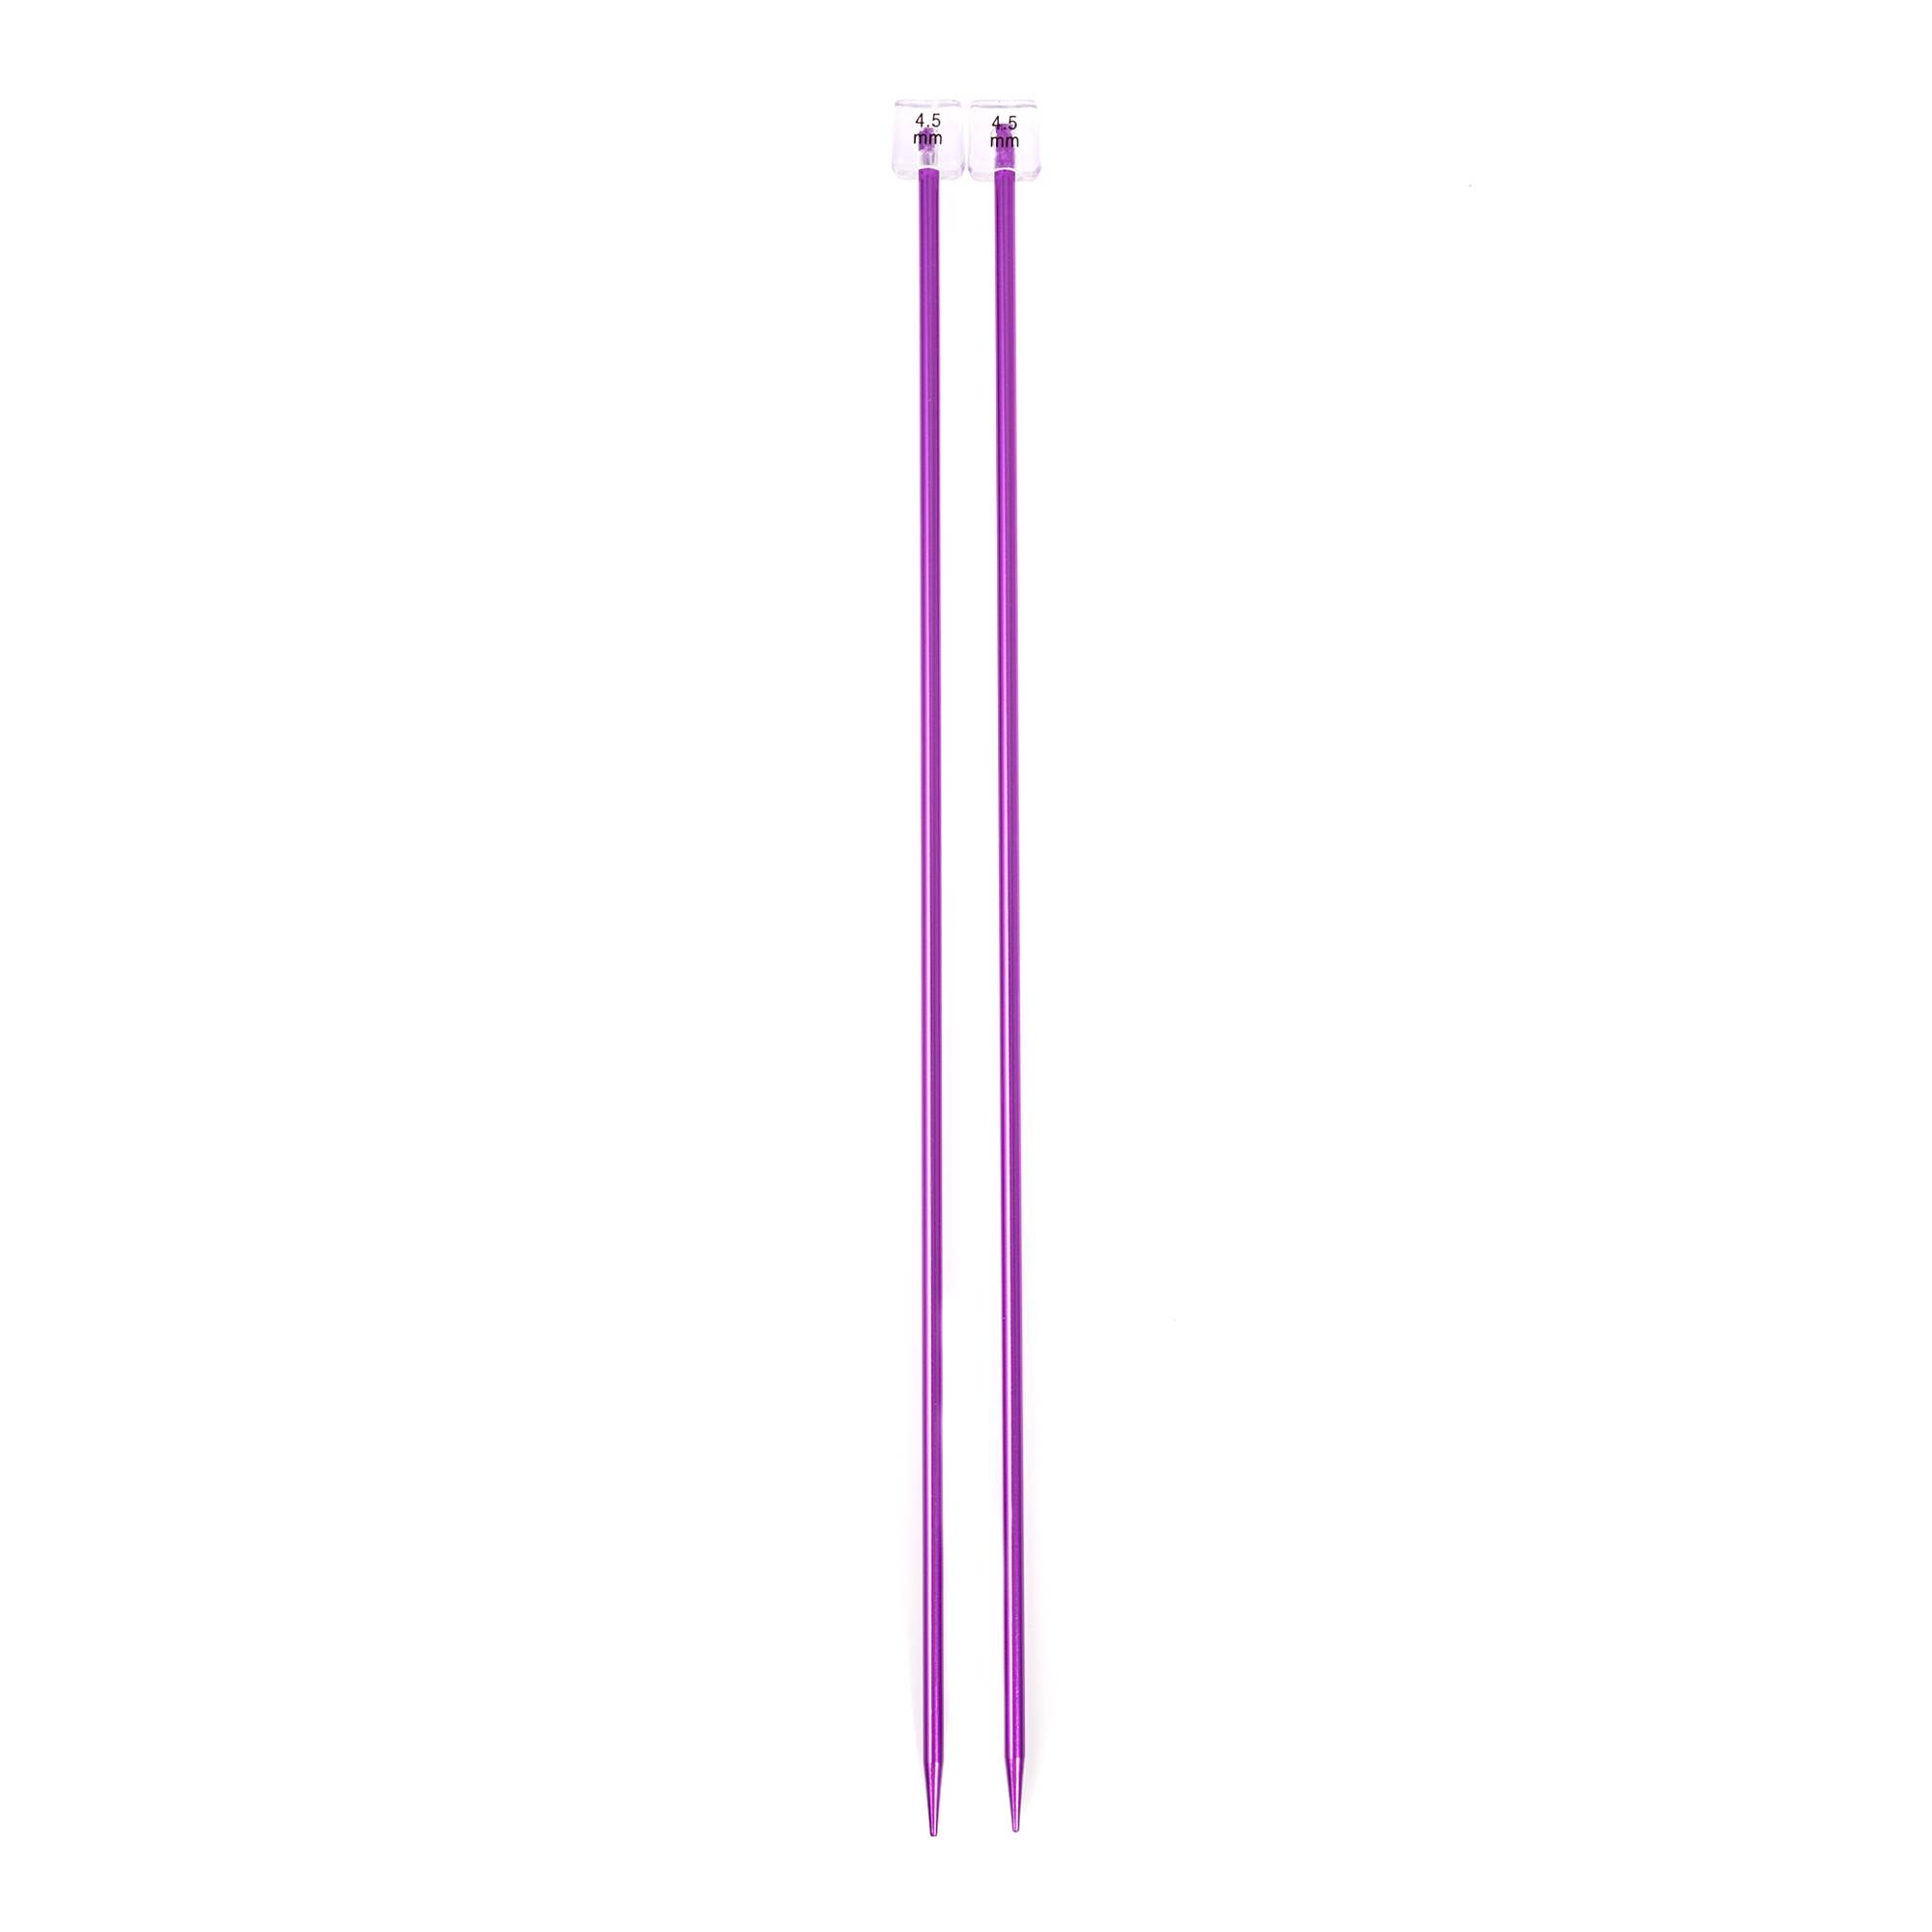 Knitcraft Purple Knitting Needles 4.5mm